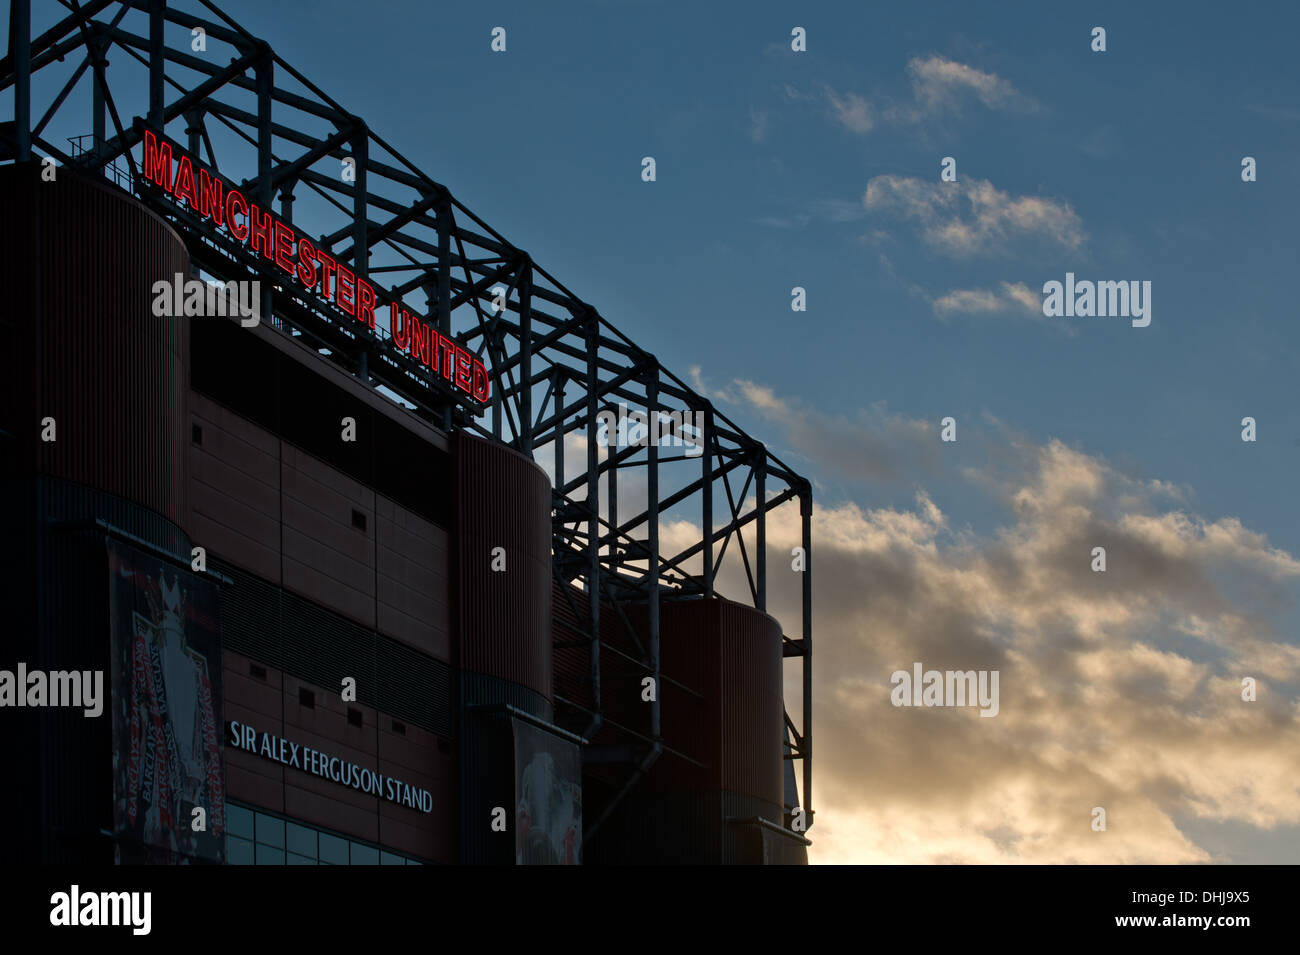 Eine in der Nähe von Silhouette von Alex Ferguson stehen alte Trafford, Heimstadion von Manchester United, Sonnenuntergang Hintergrund (nur zur redaktionellen Verwendung). Stockfoto